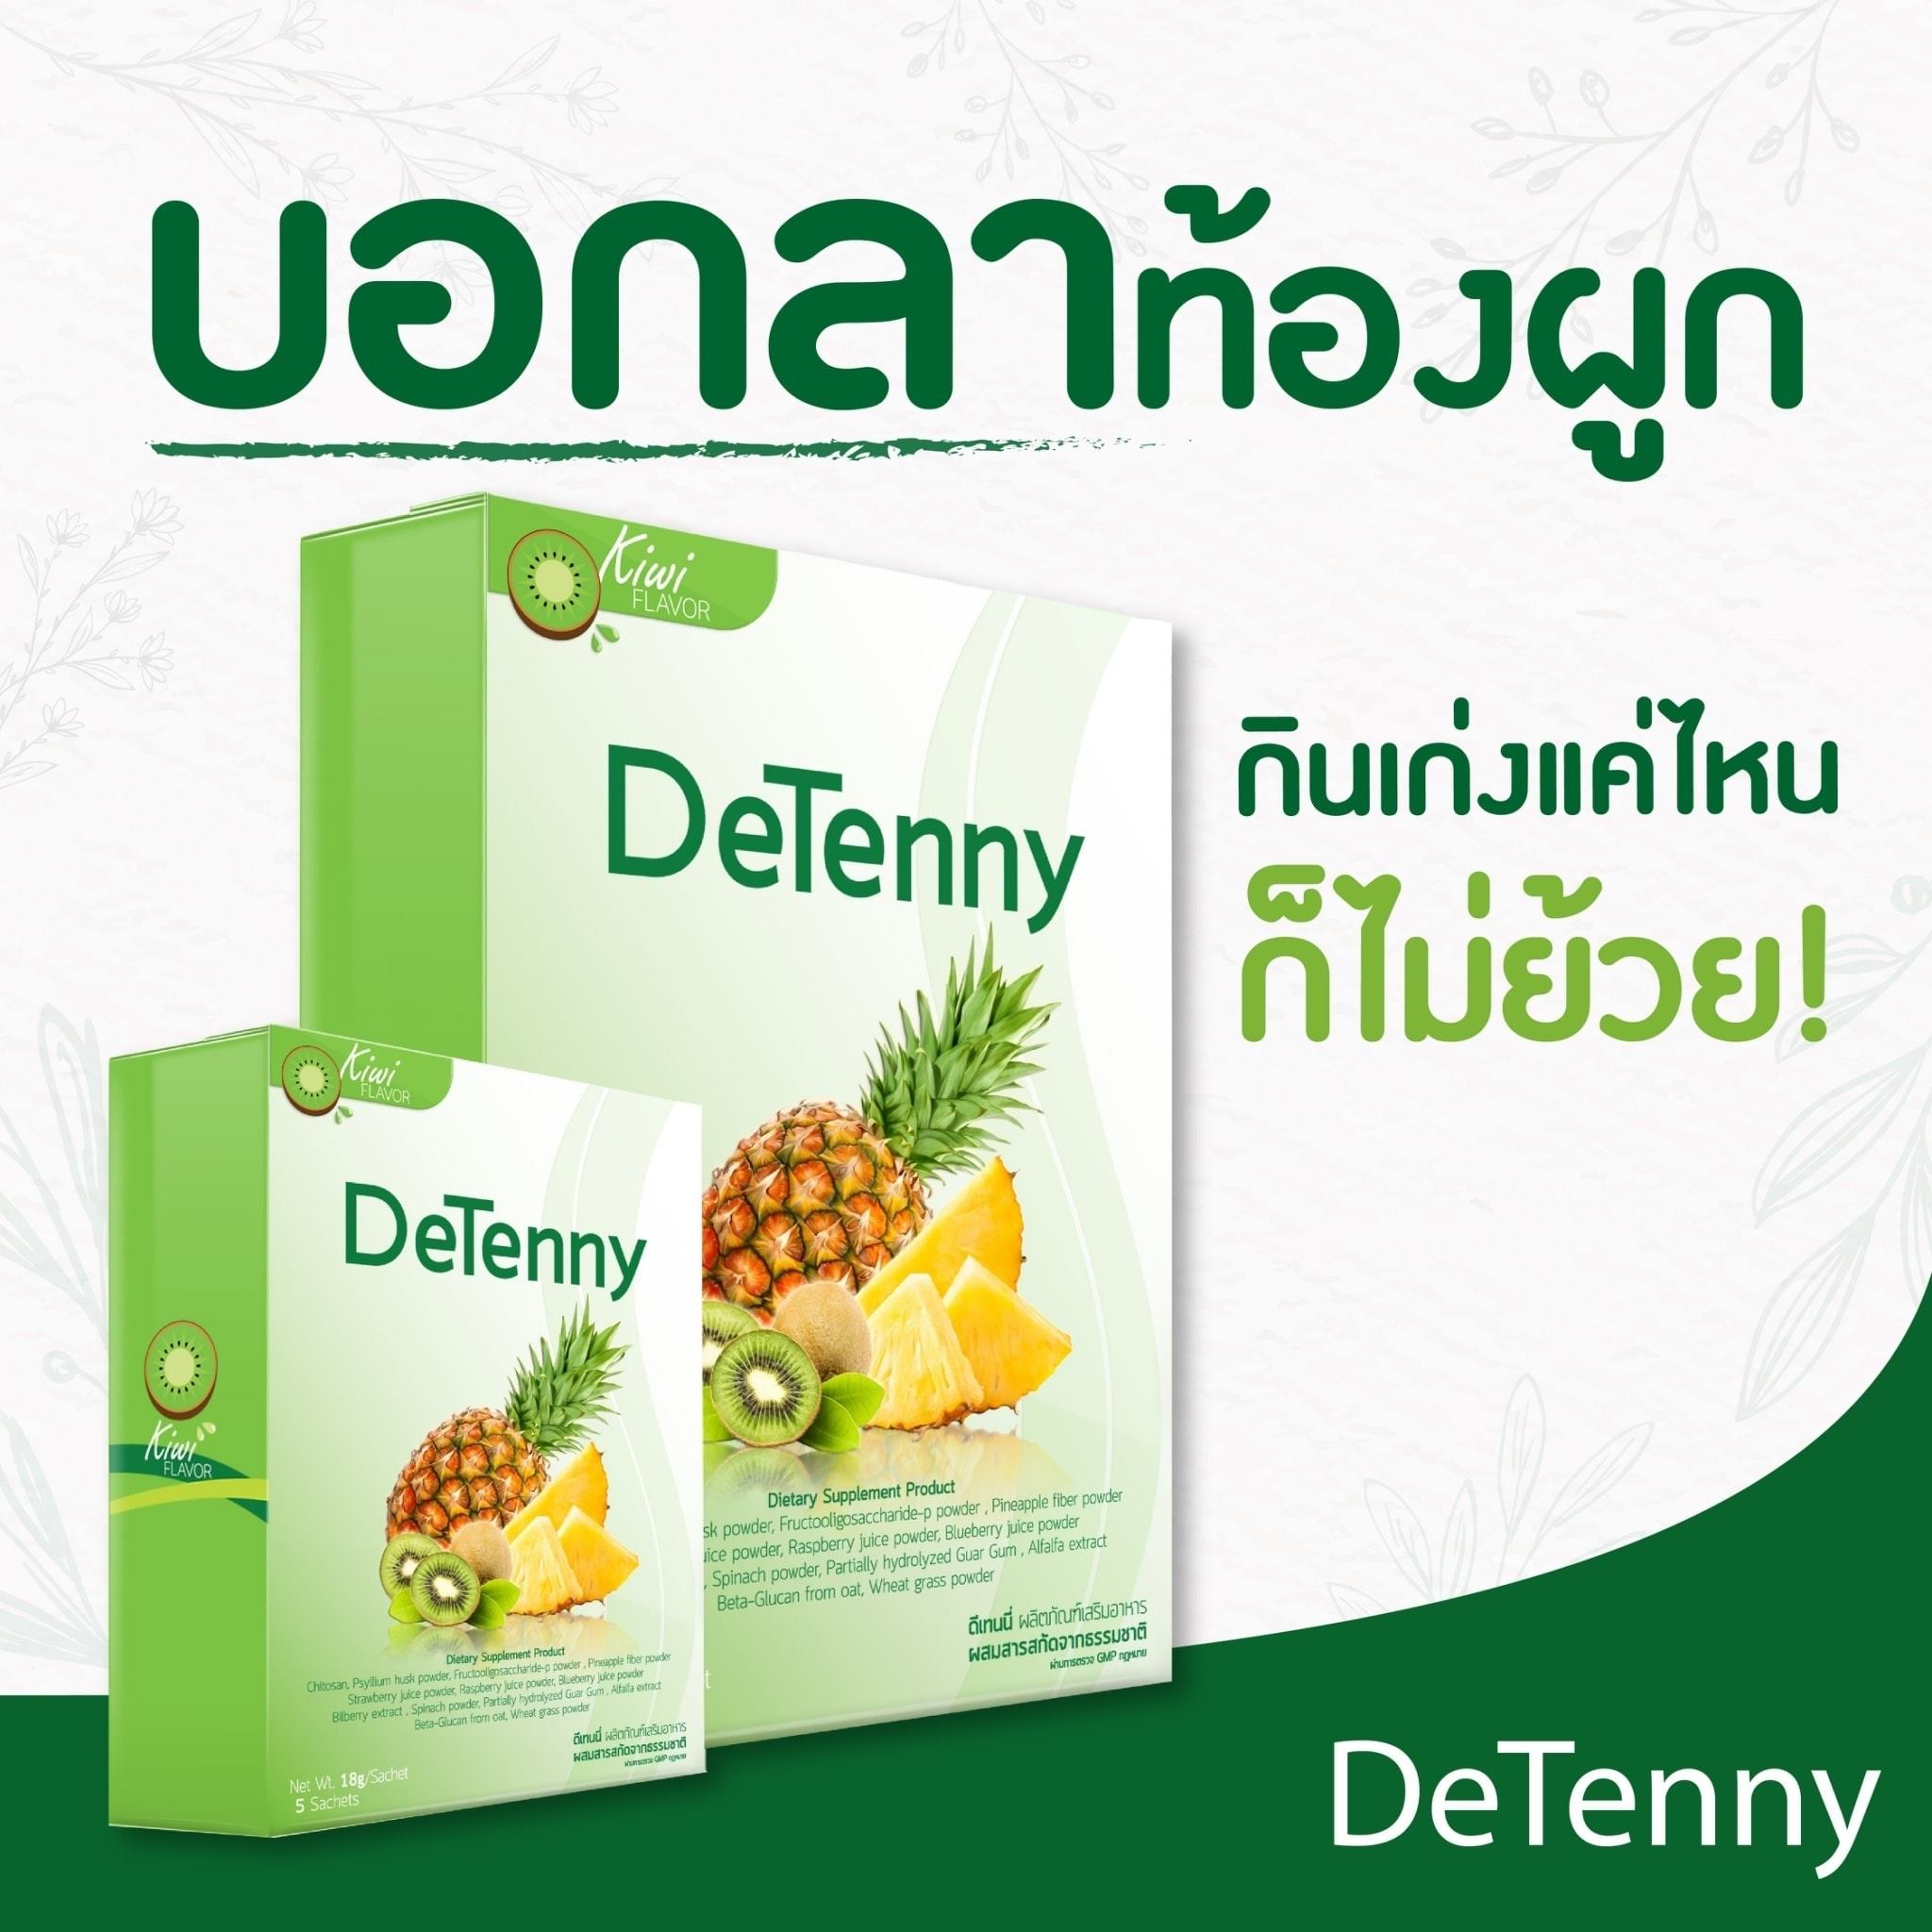 DeTenny "ดีเทนนี่" ผลิตภัณฑ์เสริมอาหารผสมสารสกัดจากไฟเบอร์ธรรมชาติ